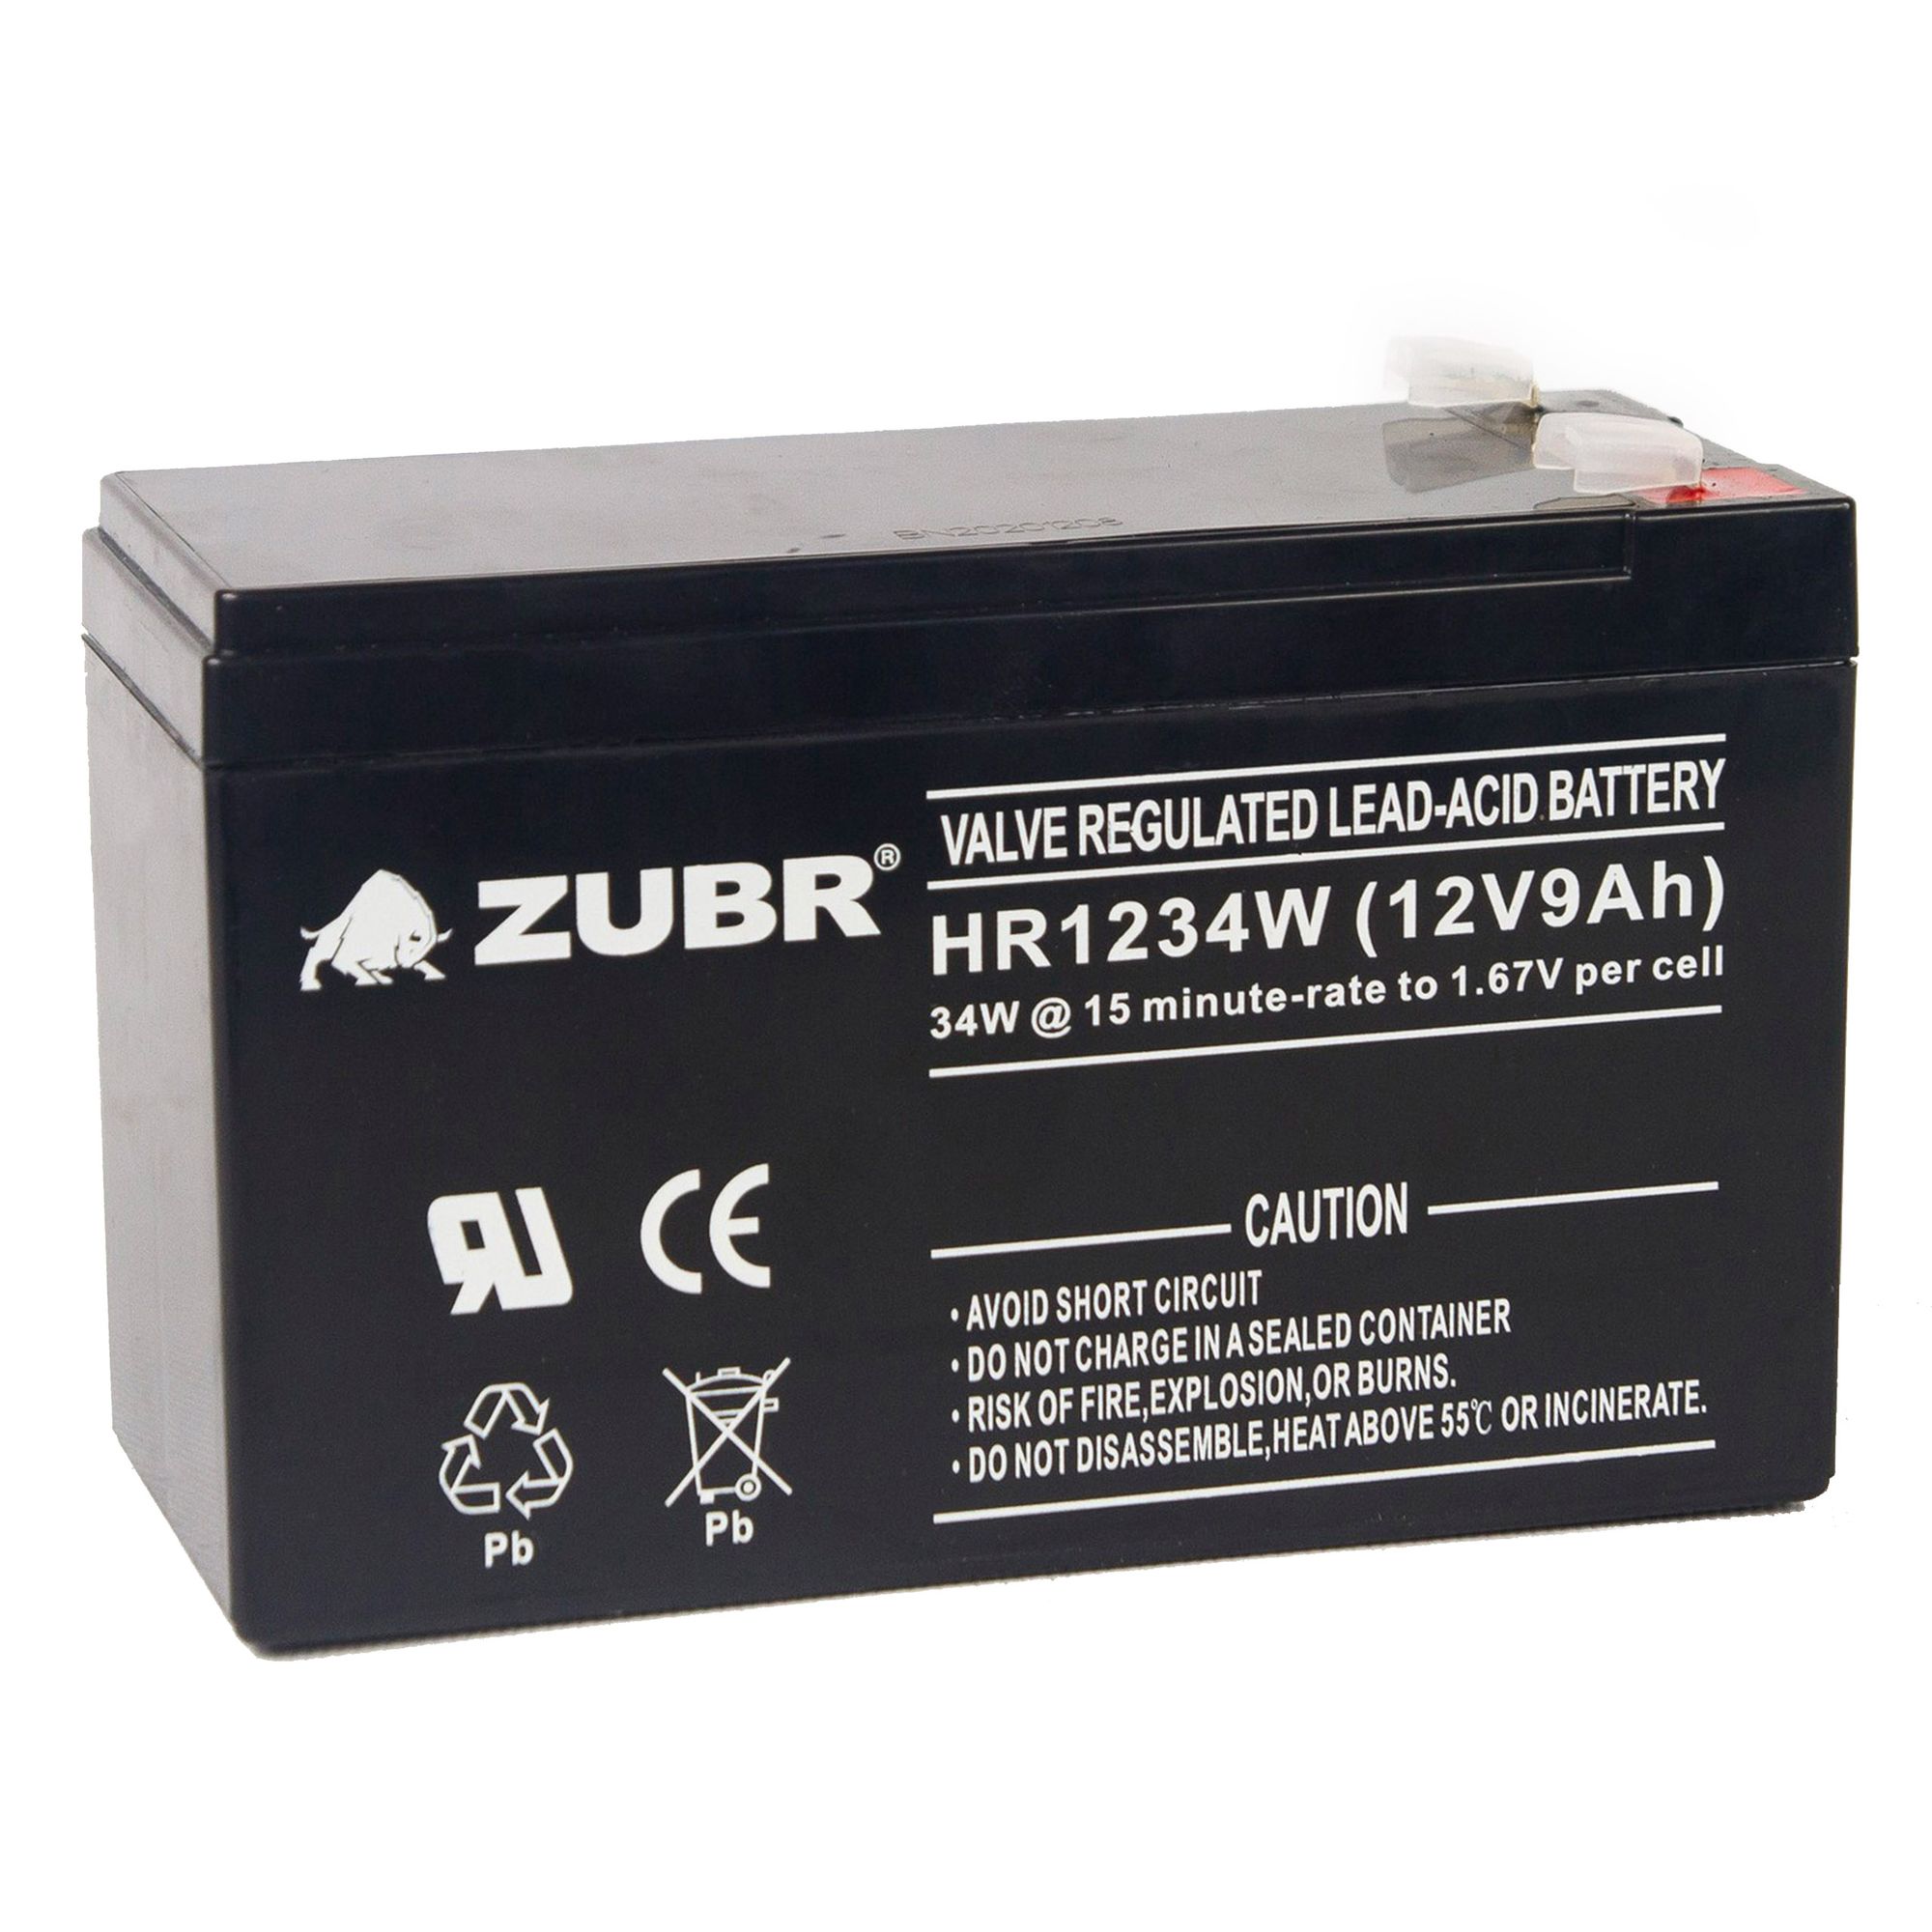 Батарея для ИБП ZUBR HR 1234 W (12V, 9Ah) (HR1234W) батарея для ибп csb 12v 9ah hr1234w f2